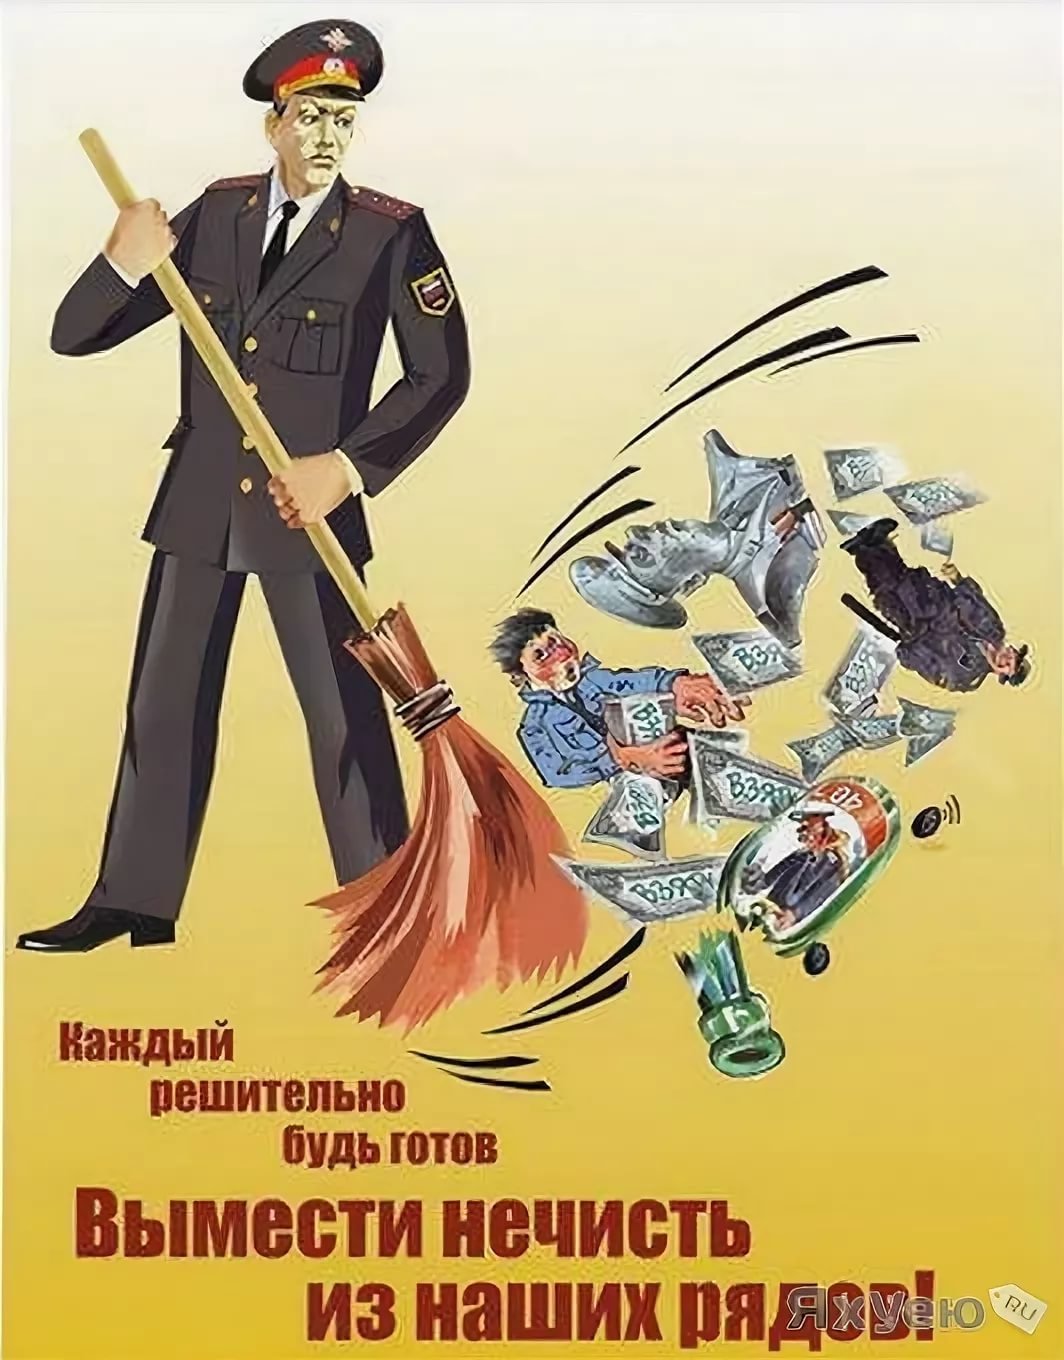 Картинки обхсс поздравления. Советская милиция плакаты. Плакат полиция. День милиции плакат. Работник милиции плакат.